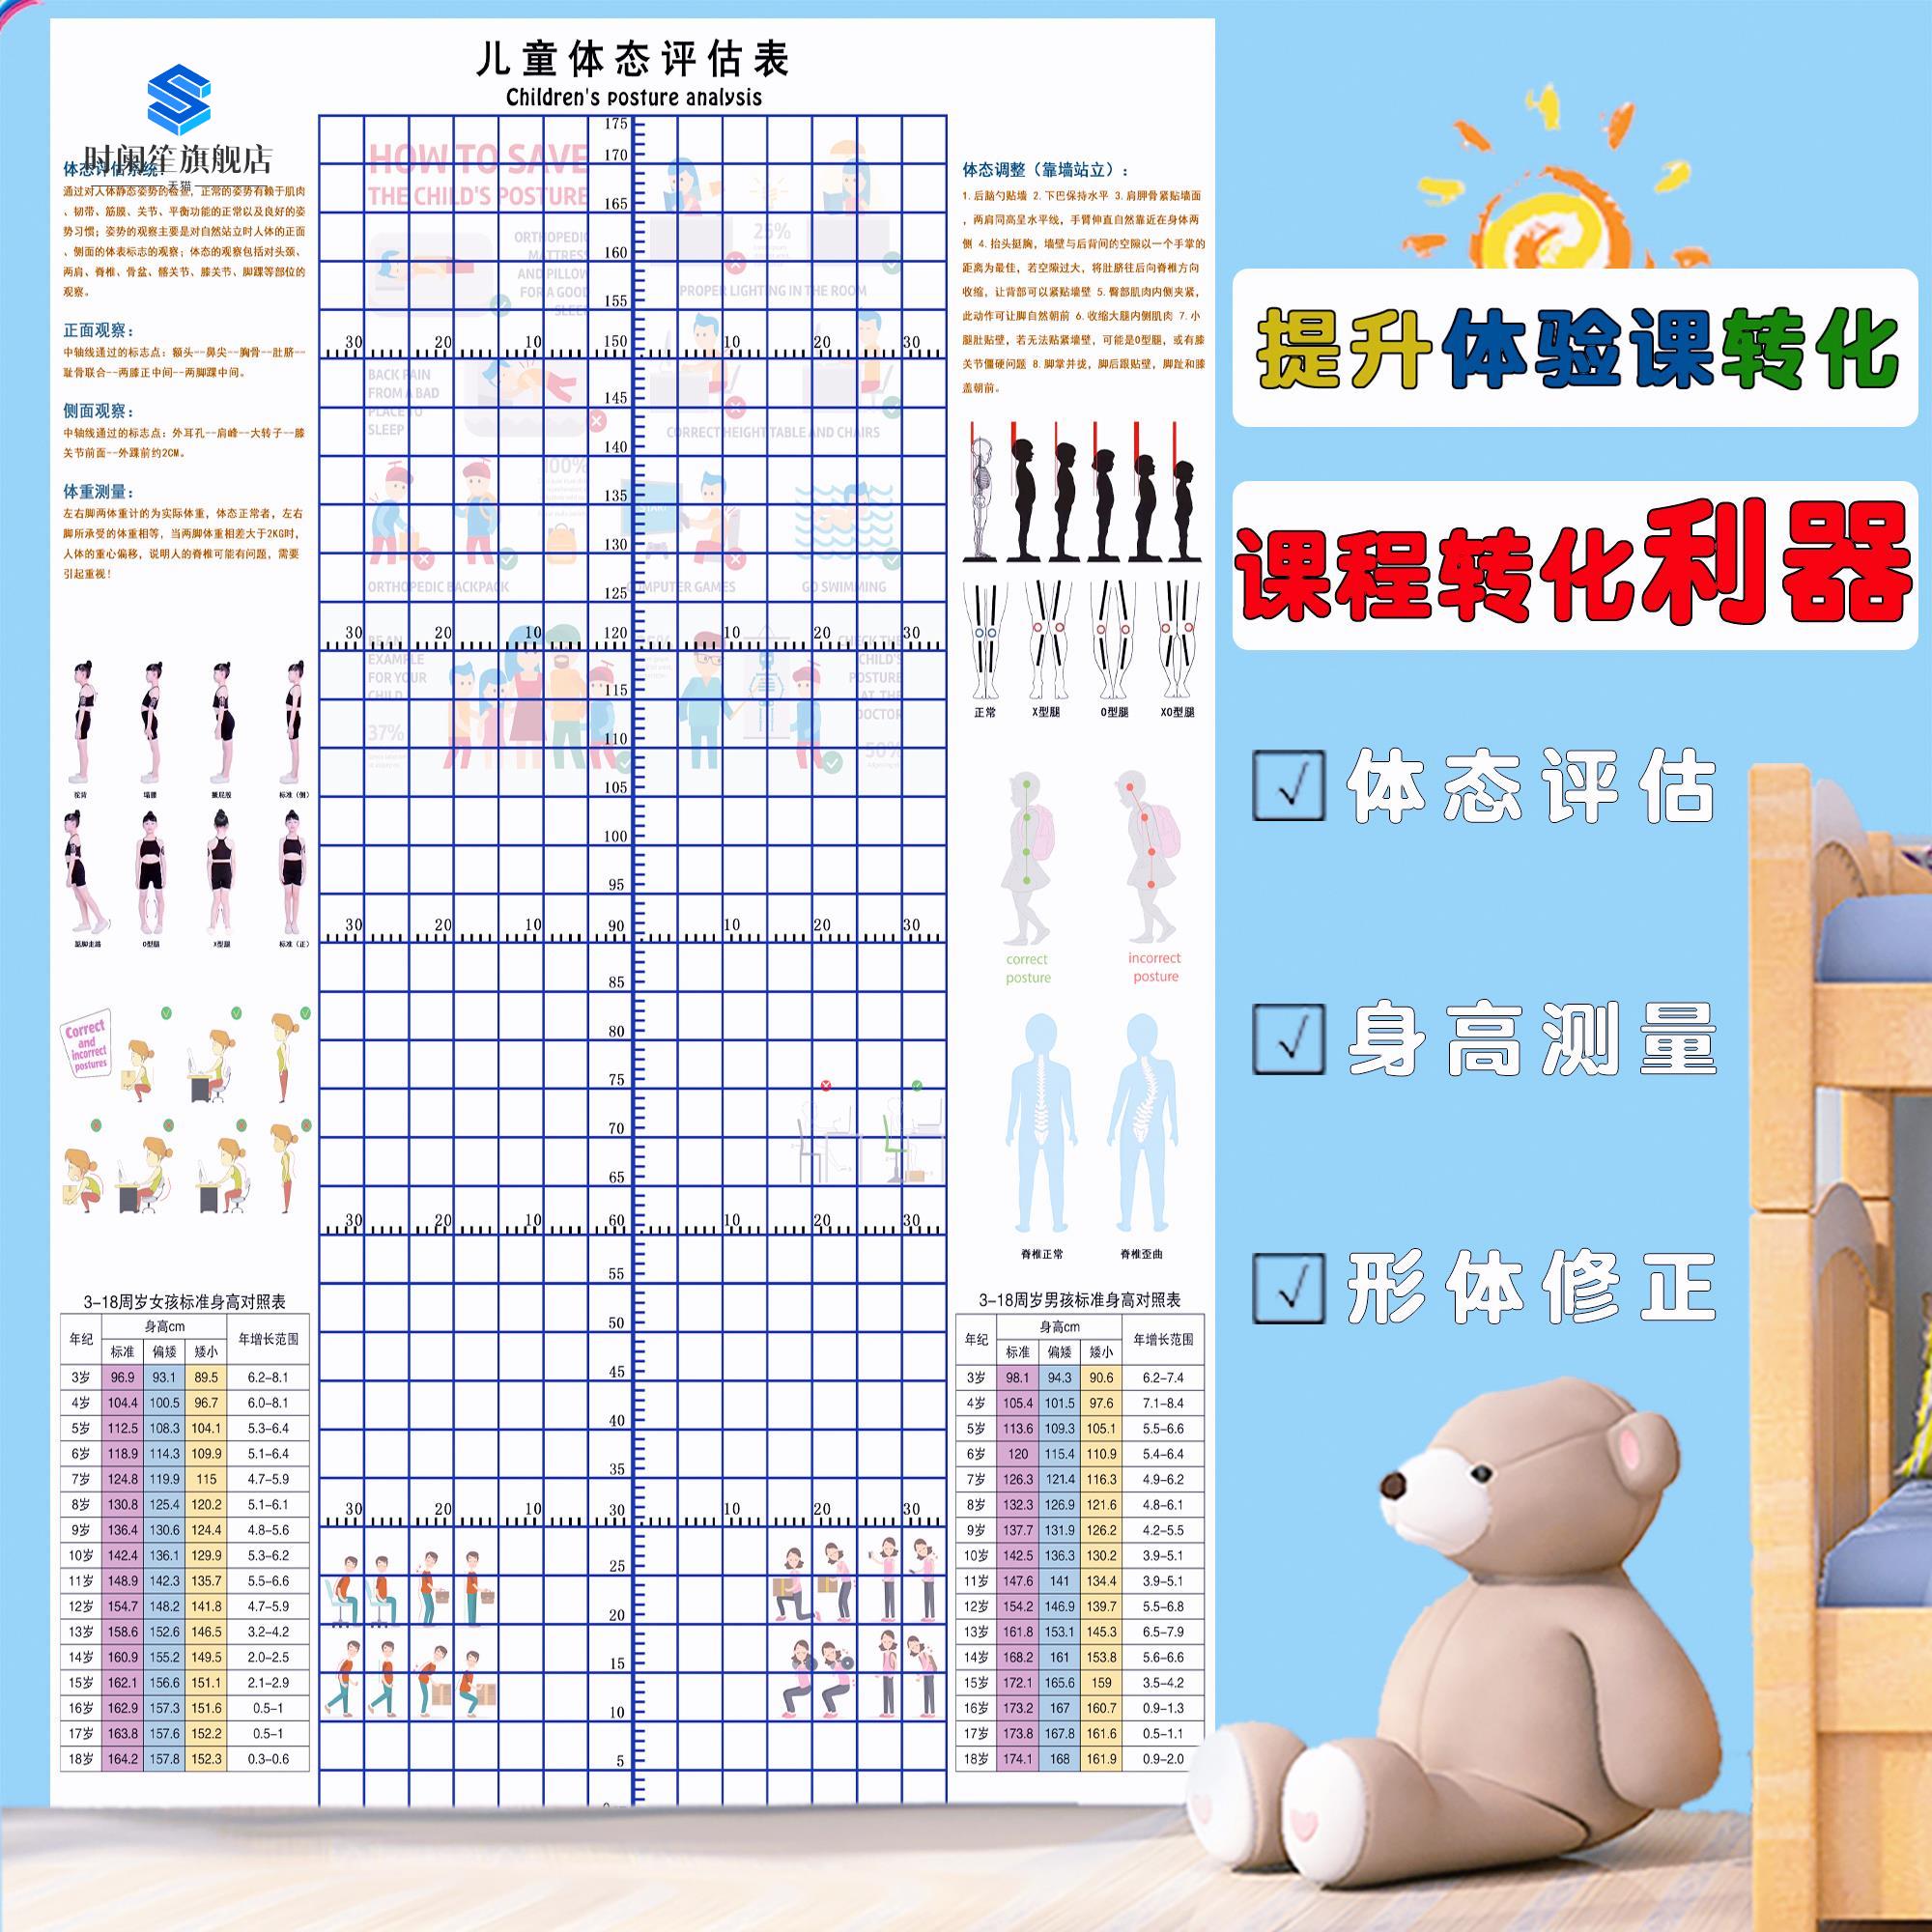 评估幼儿评估体测儿童姿背景身高表站中小体态形体图壁画墙纸网格